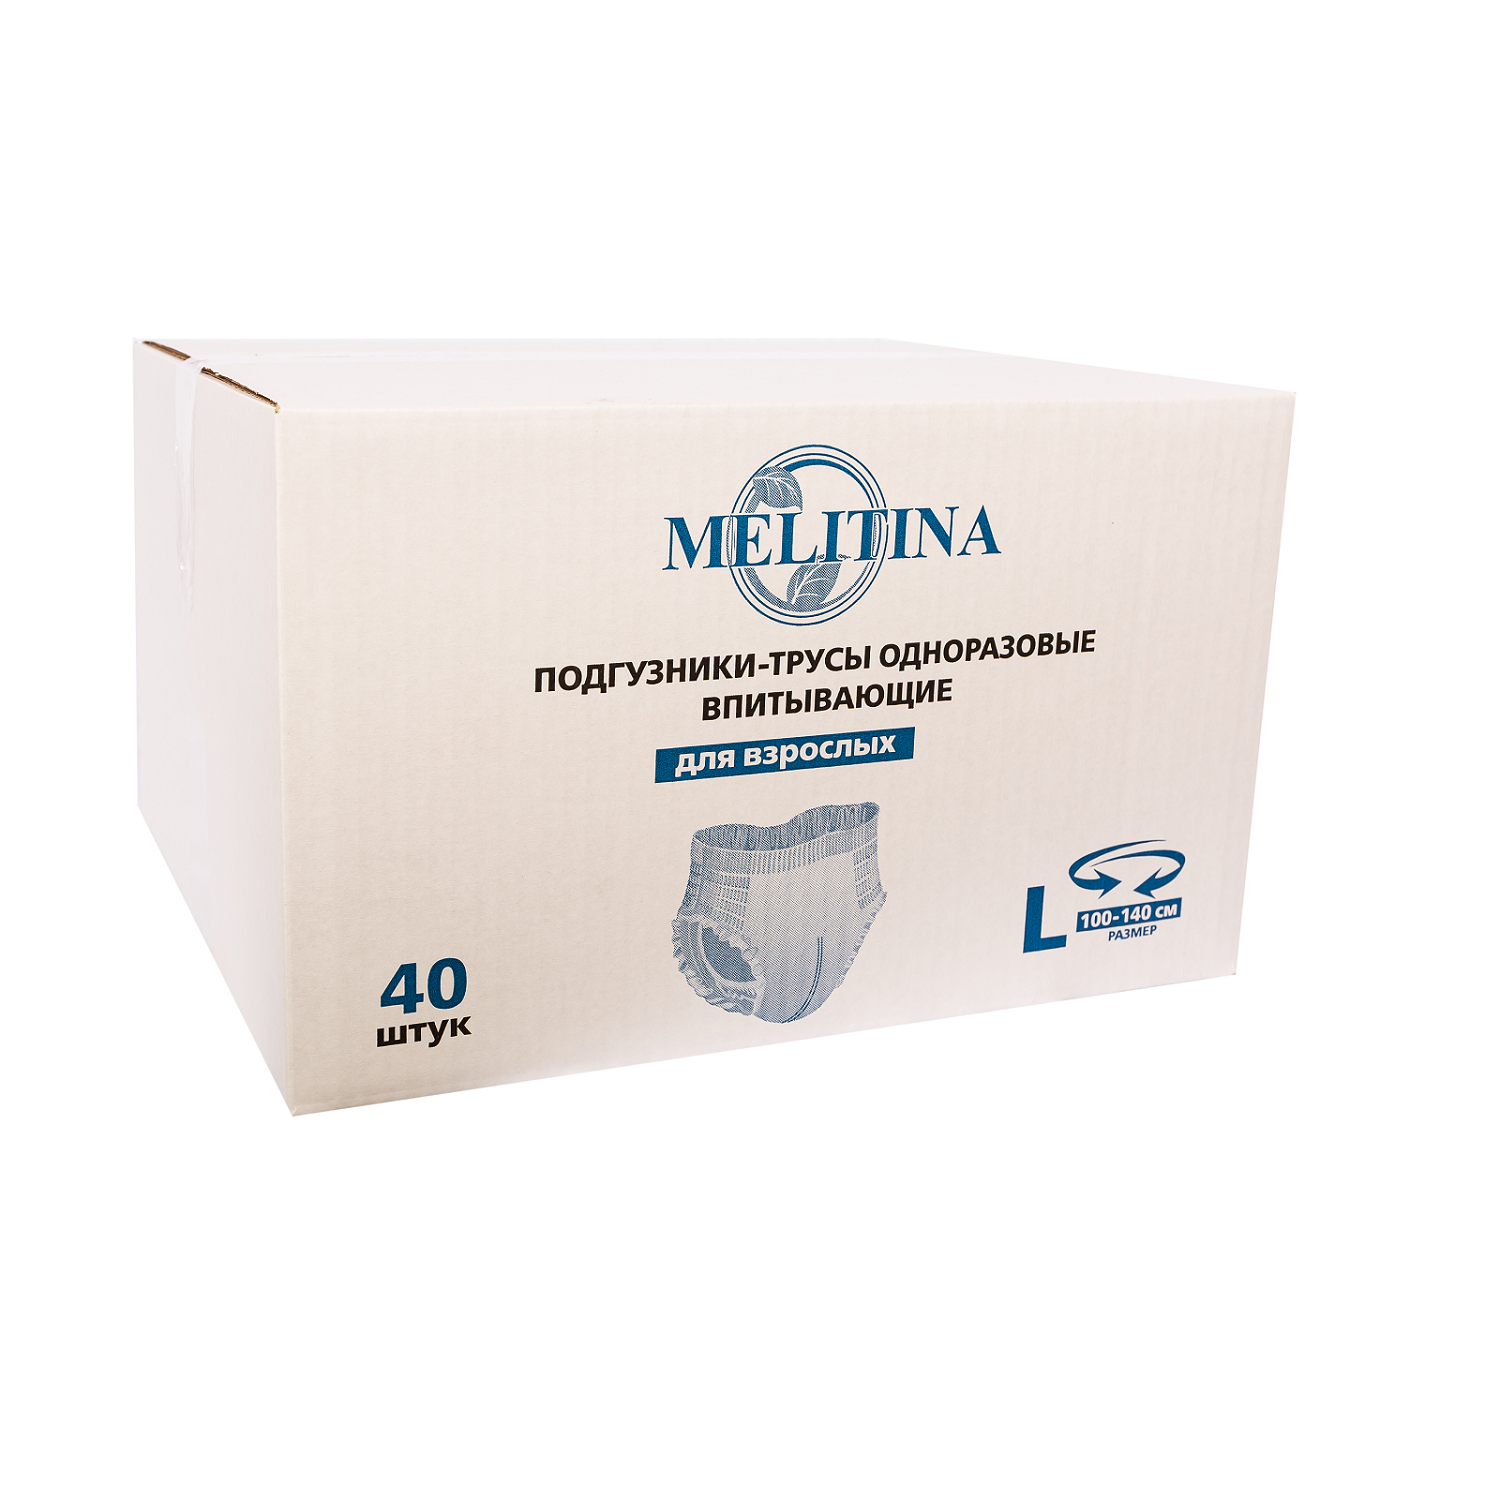 Подгузники-трусы Melitina для взрослых L 50-8746 - фото 1